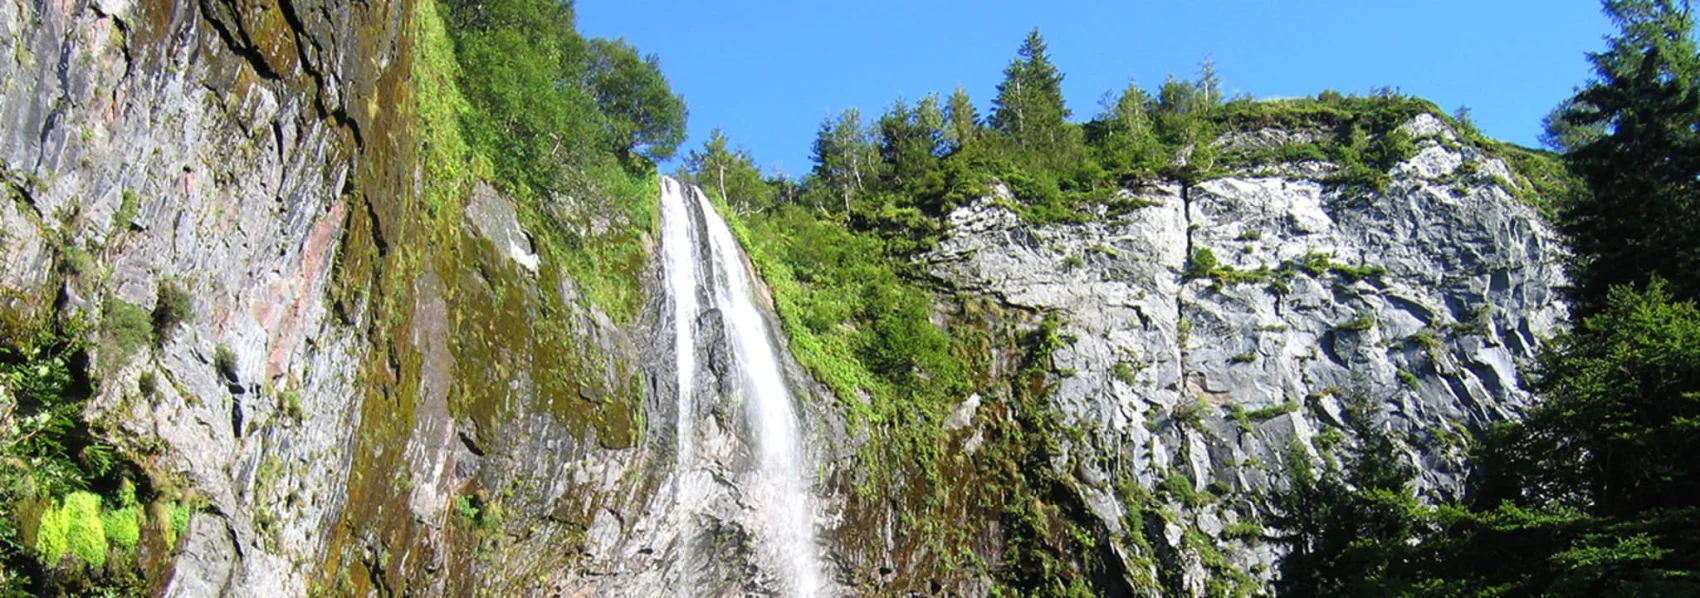 Découvrez les belles cascades en auvergne - le parc des fées